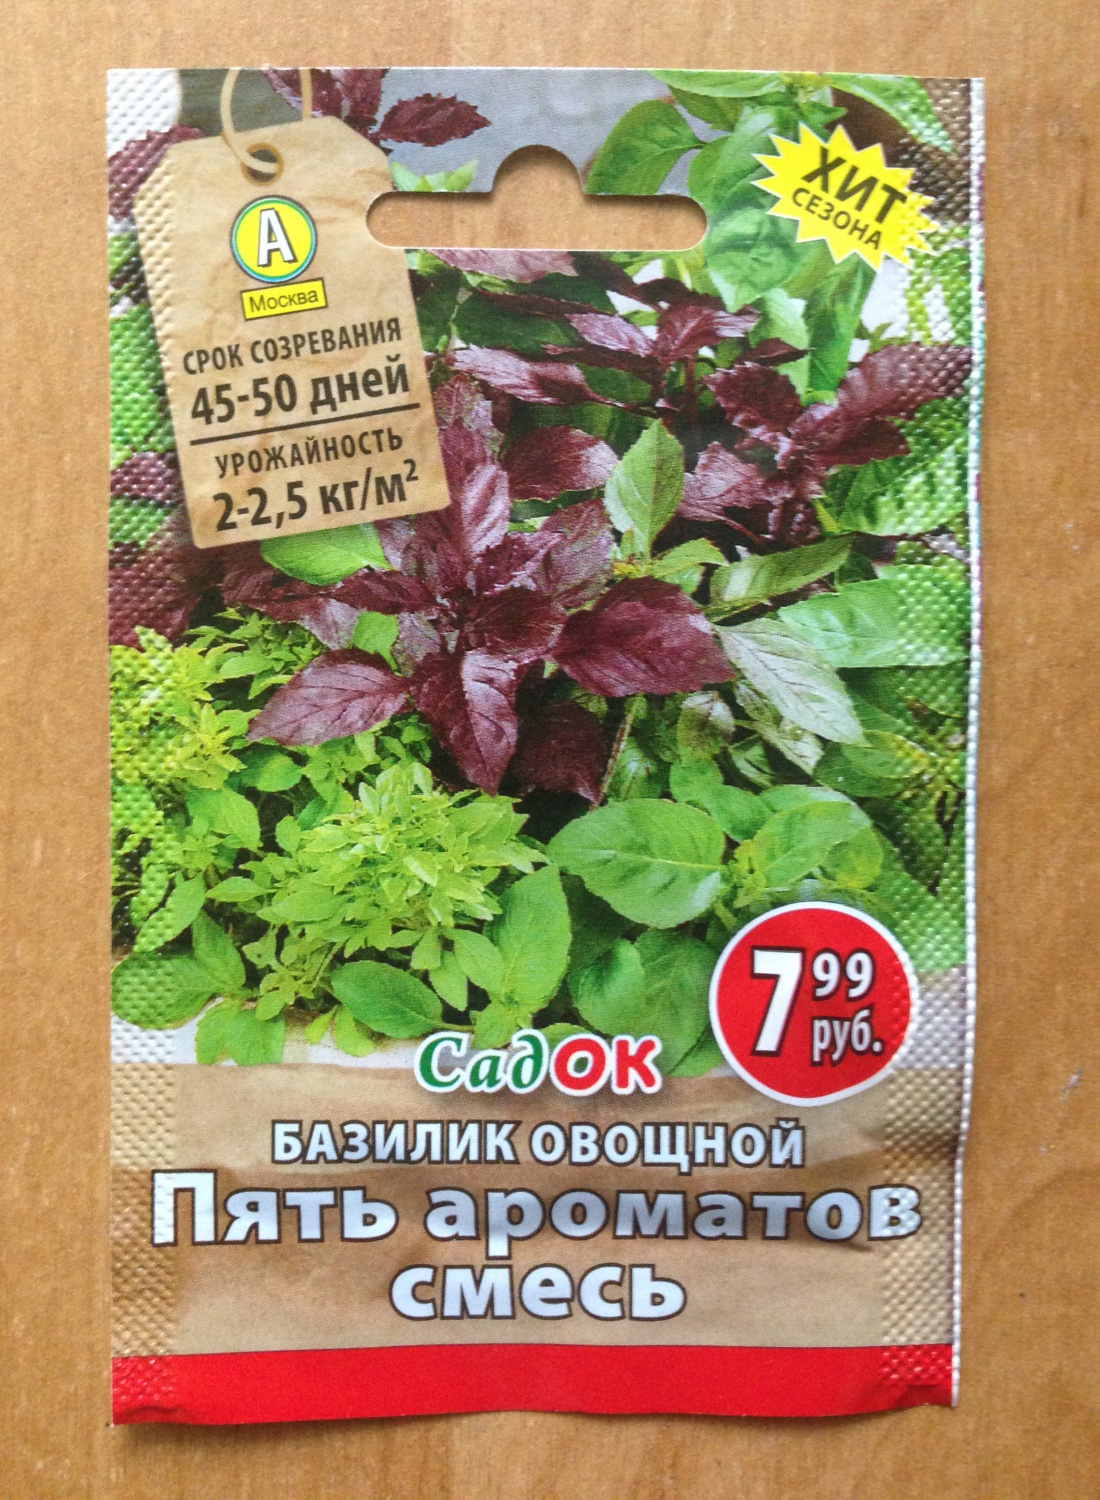 СадОК Базилик овощной Пять ароматов смесь - «Свежая зелень на подоконнике!»